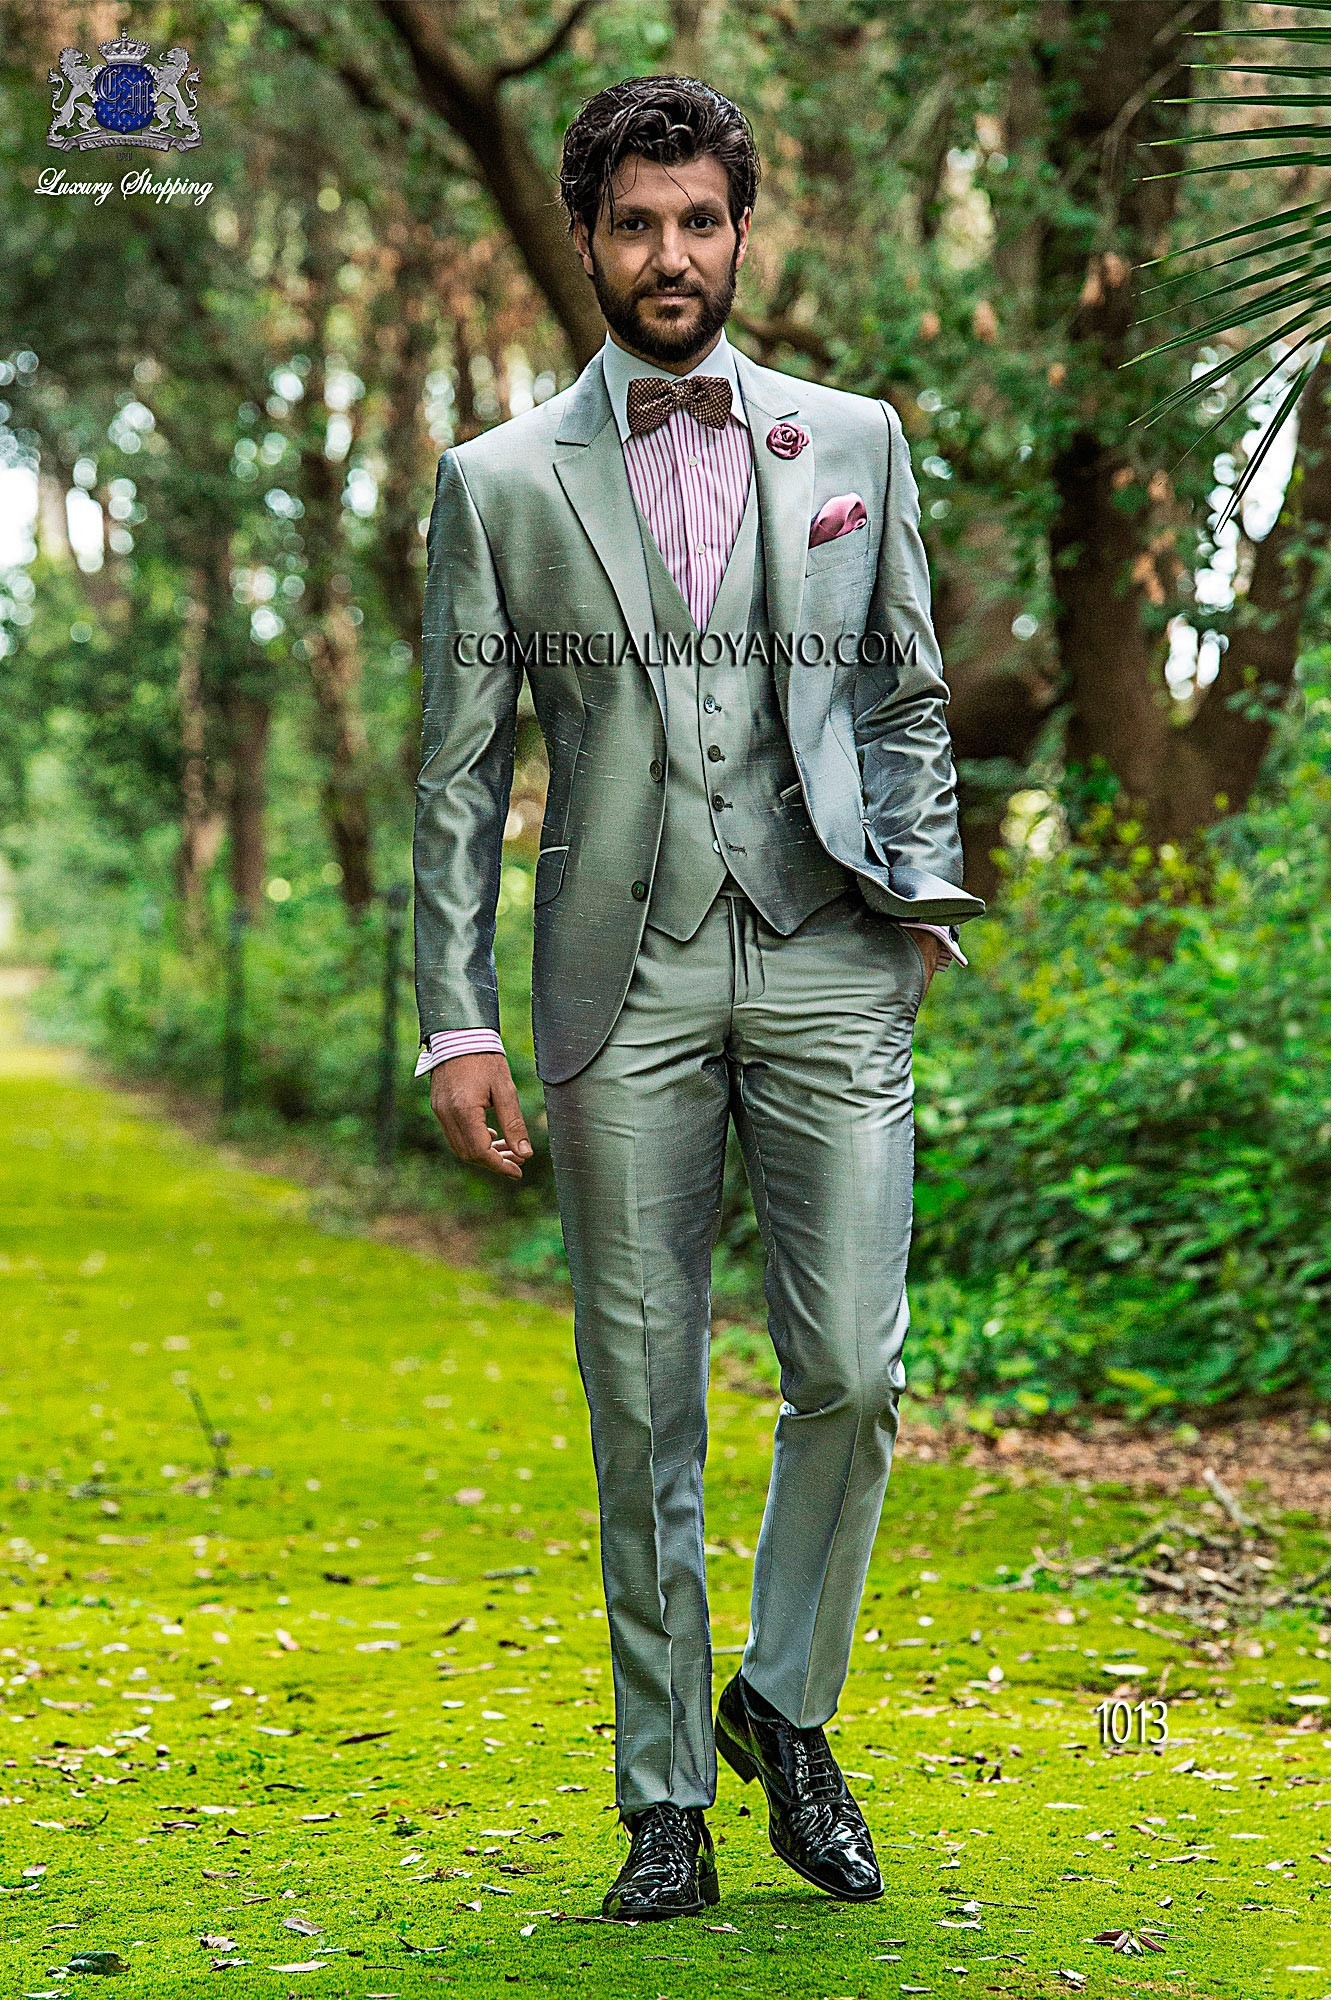 Hipster pearl gray men wedding suit model 1013 Mario Moyano